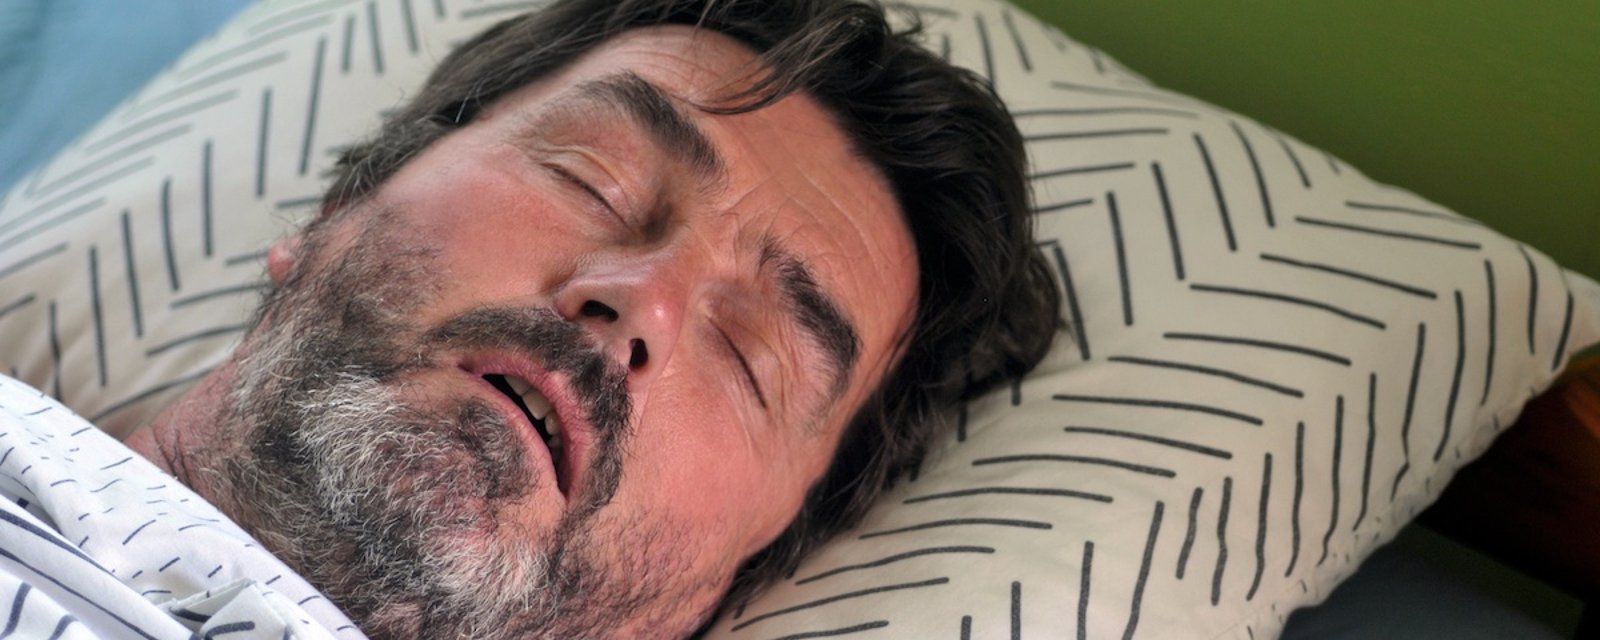 Comment savoir si vous souffrez d'apnée du sommeil